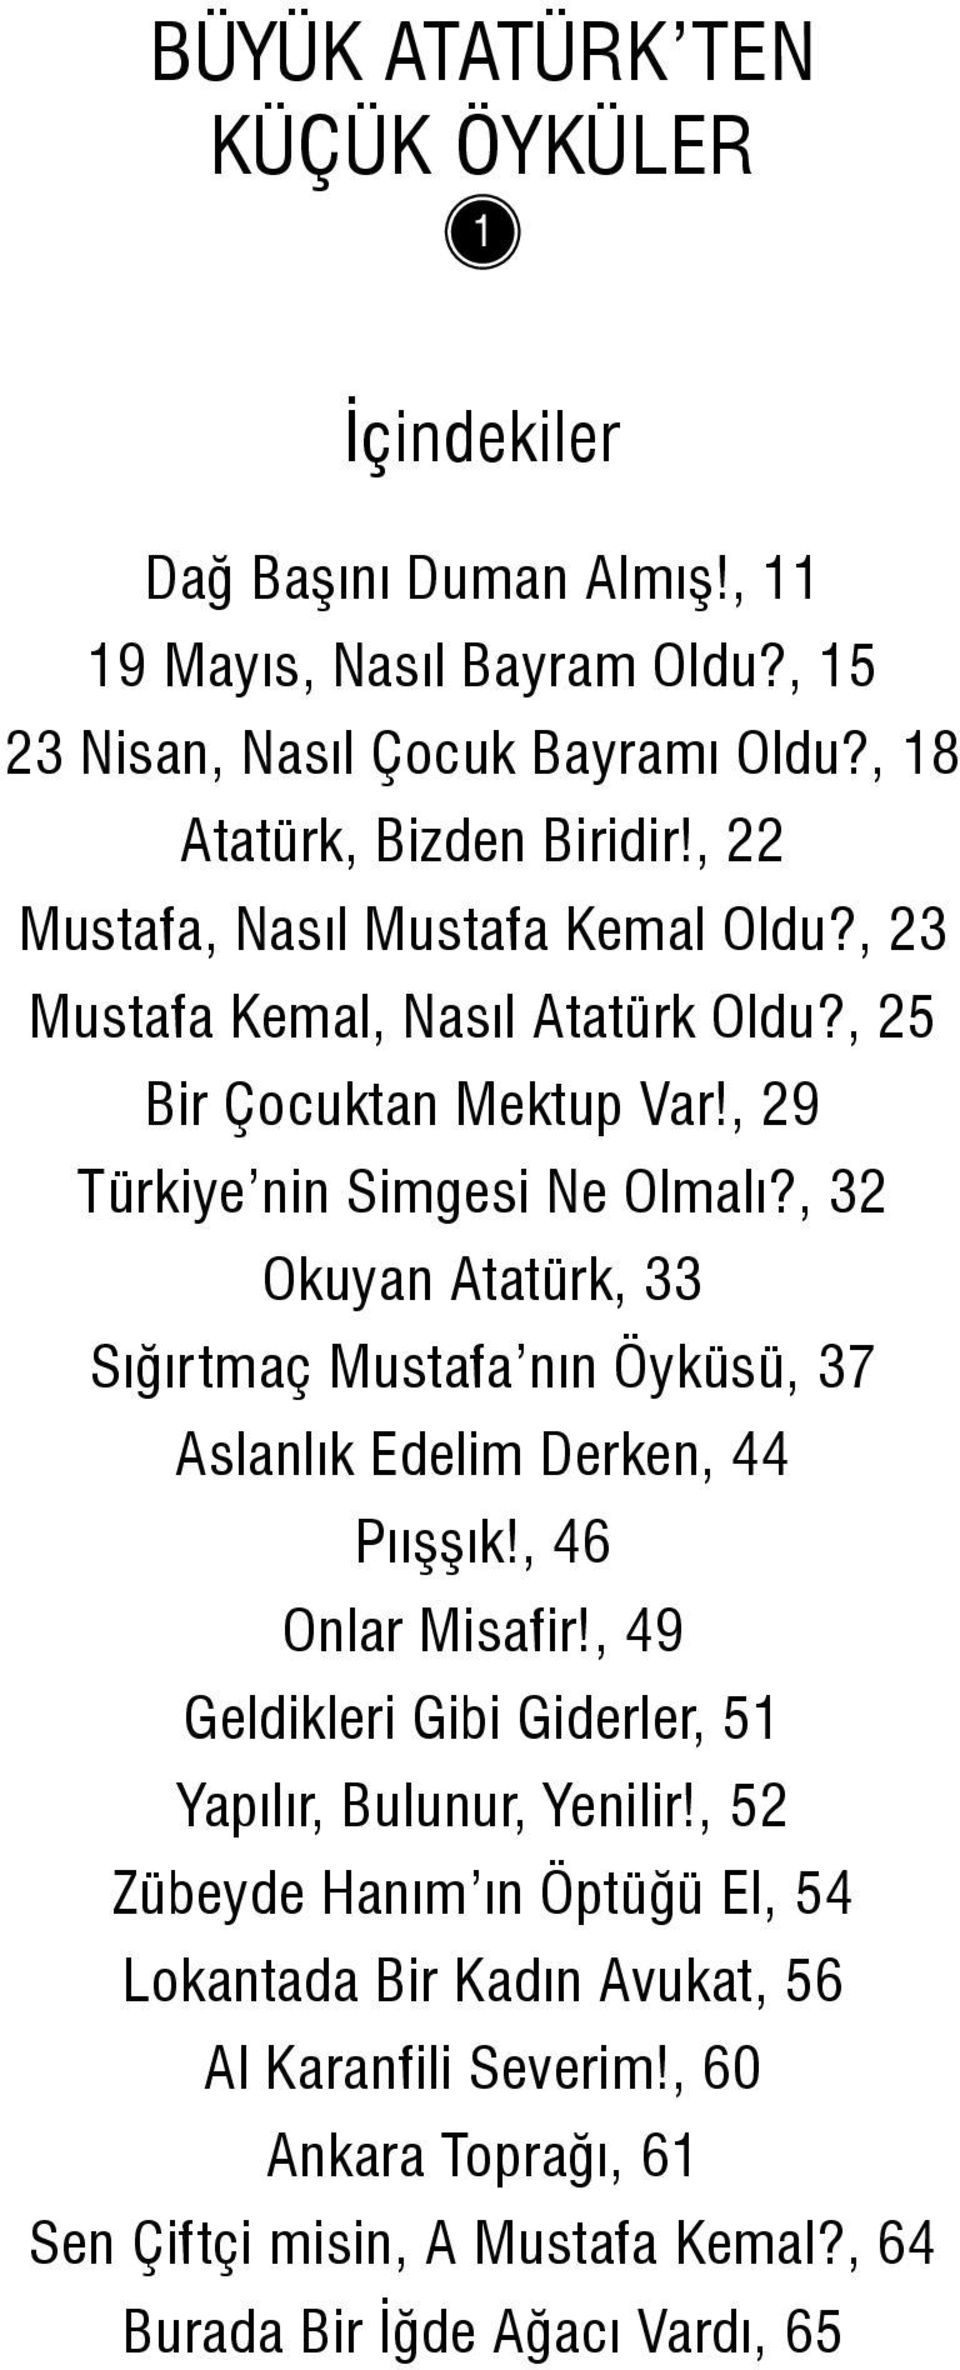 , 29 Türkiye nin Simgesi Ne Olmalı?, 32 Okuyan Atatürk, 33 Sığırtmaç Mustafa nın Öyküsü, 37 Aslanlık Edelim Derken, 44 Pıışşık!, 46 Onlar Misafir!